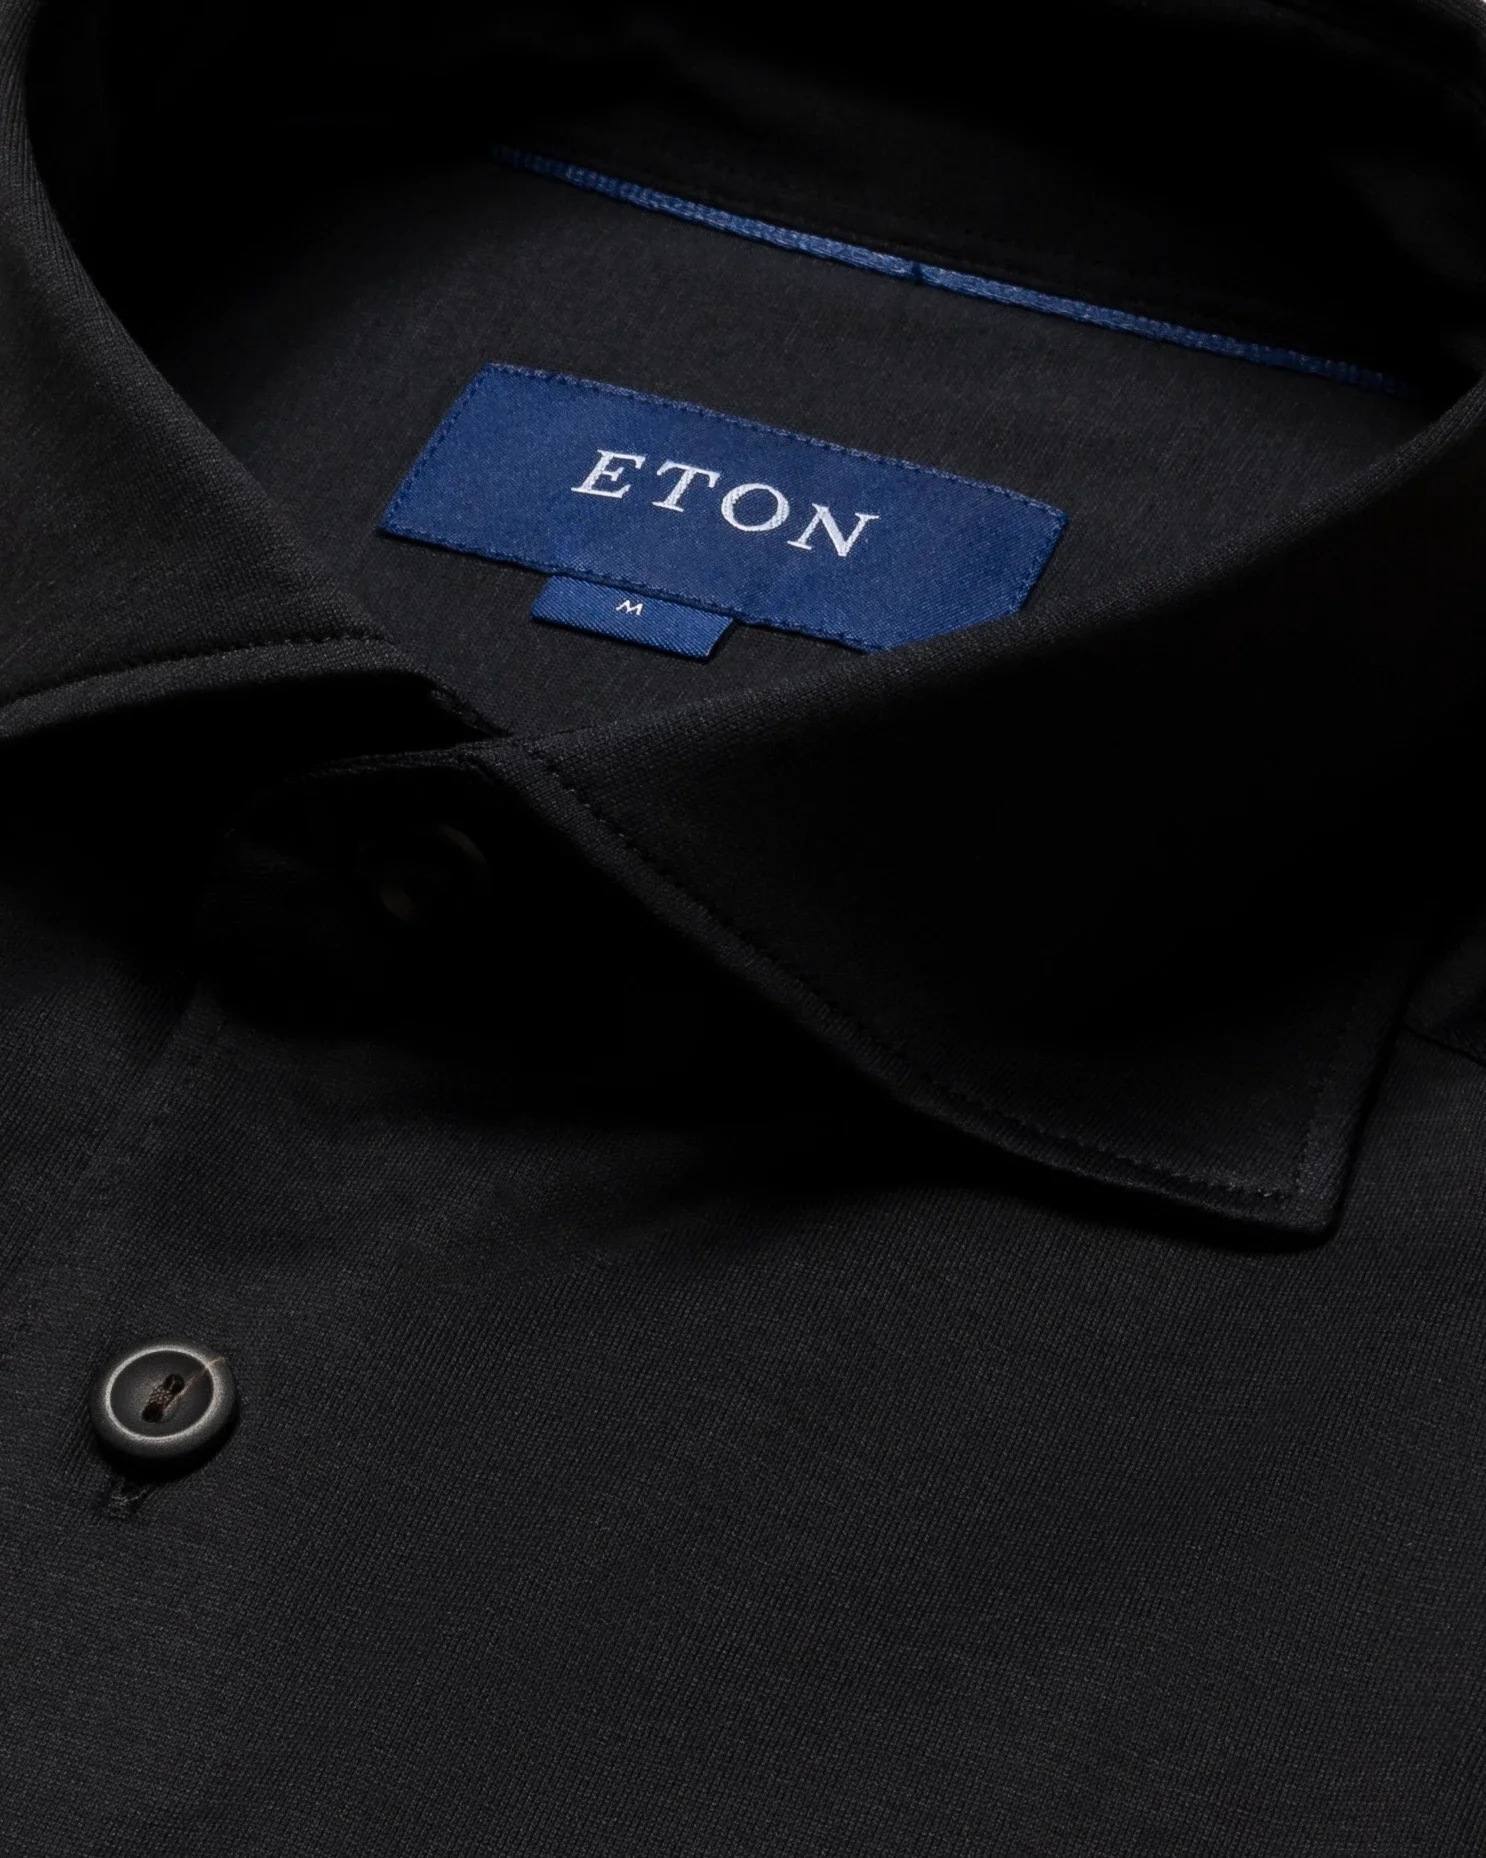 Eton - black jersey